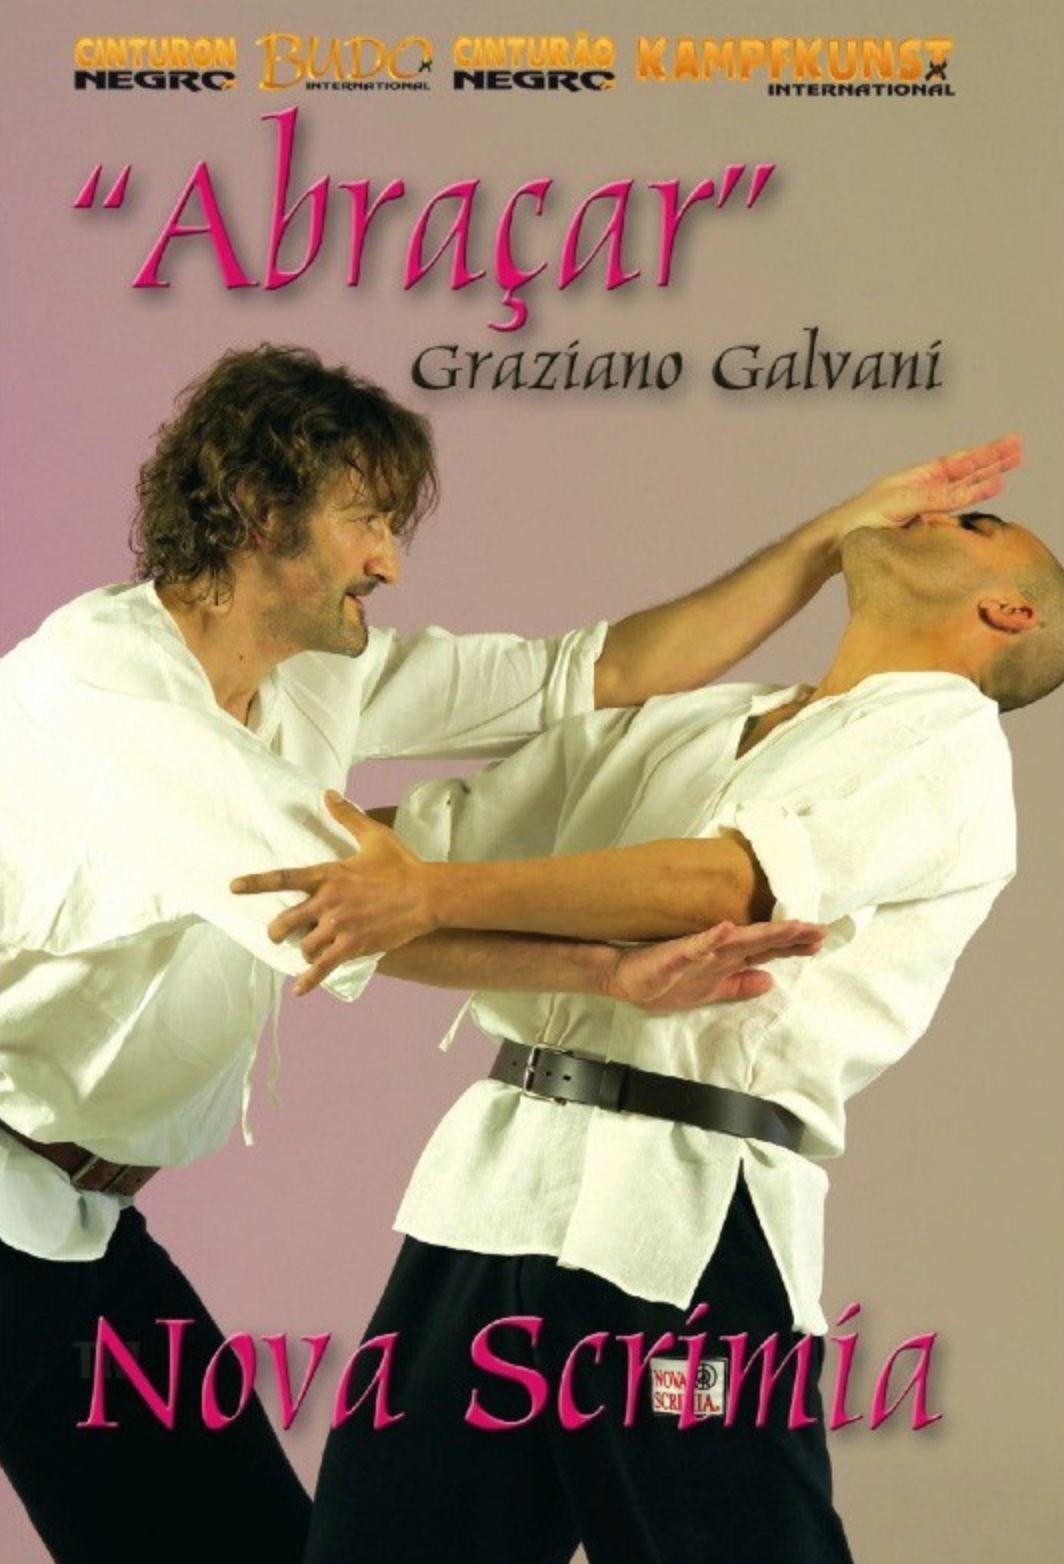 Nova Scrimia Abracar DVD by Graziano Galvani - Budovideos Inc